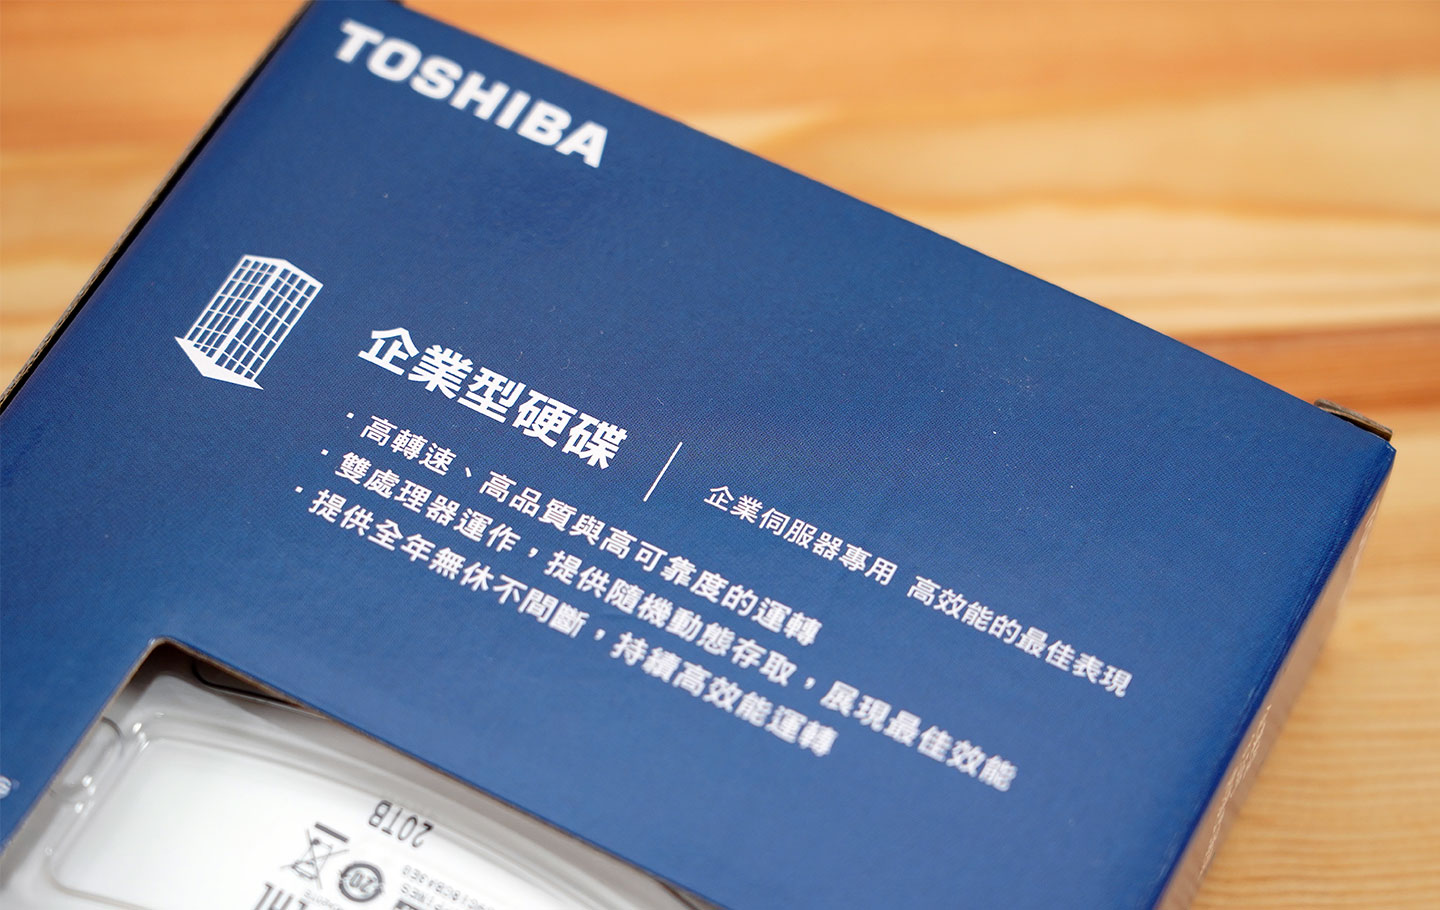 外盒背面也說明了 Toshiba MG10 系列的產品定位為企型取向，能夠提供高效能與更好的可靠度，更可全年無休不間斷運作。